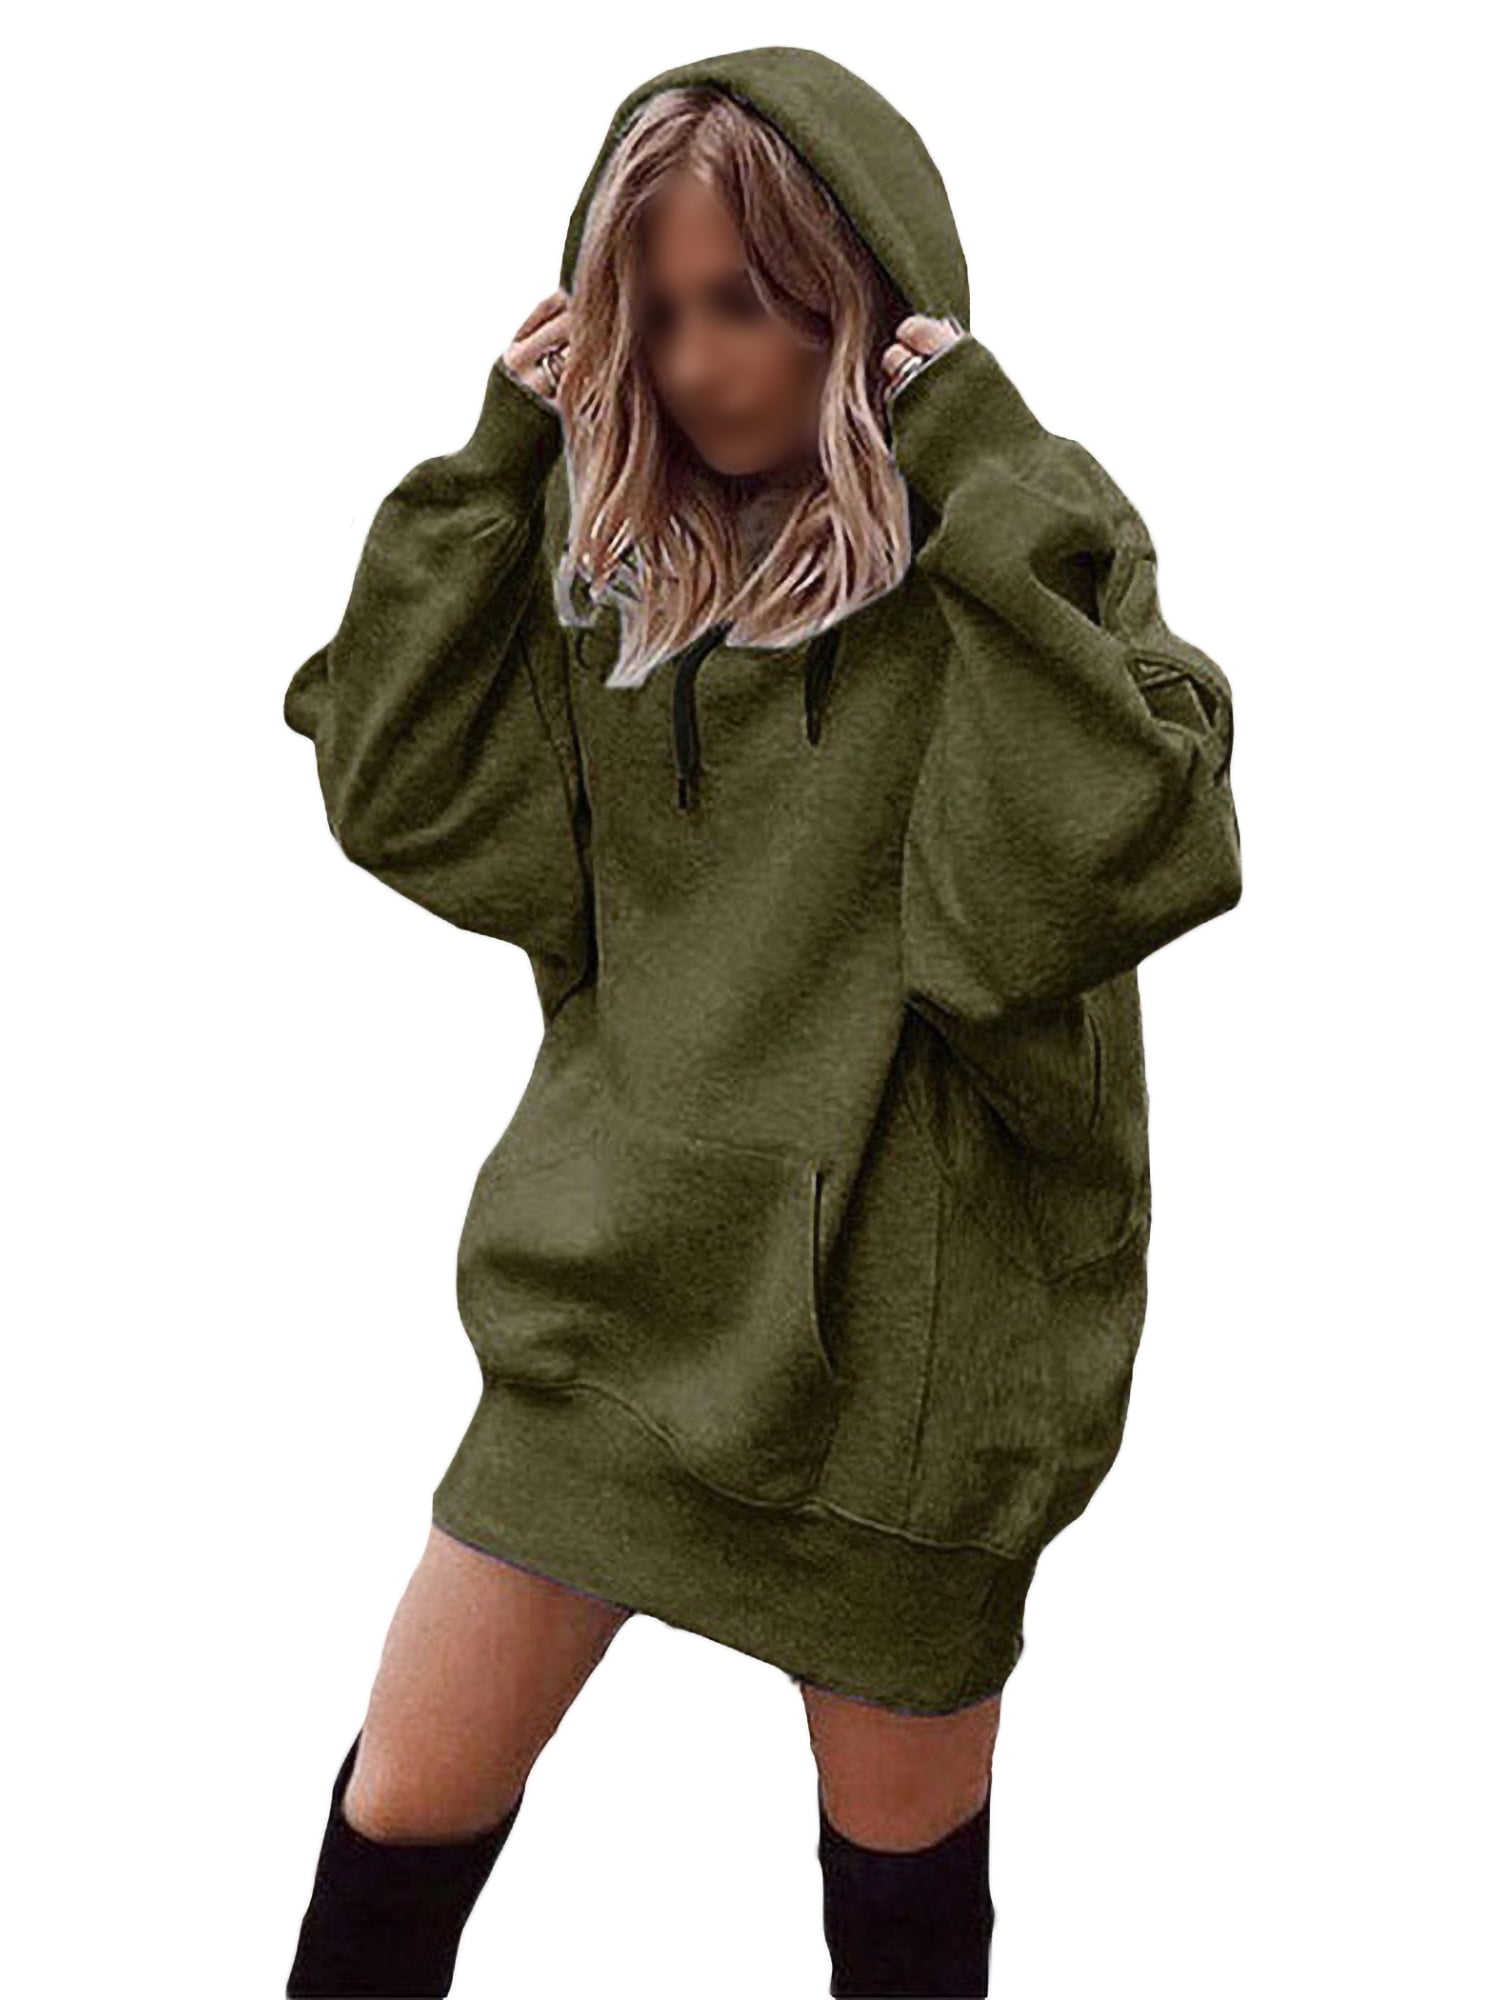 KYLEON Womens Mens Girls Unisex Hoodies Print Long Sleeve Pullover Hooded Sweatshirts Casual Sweaters Jumpers Tops 